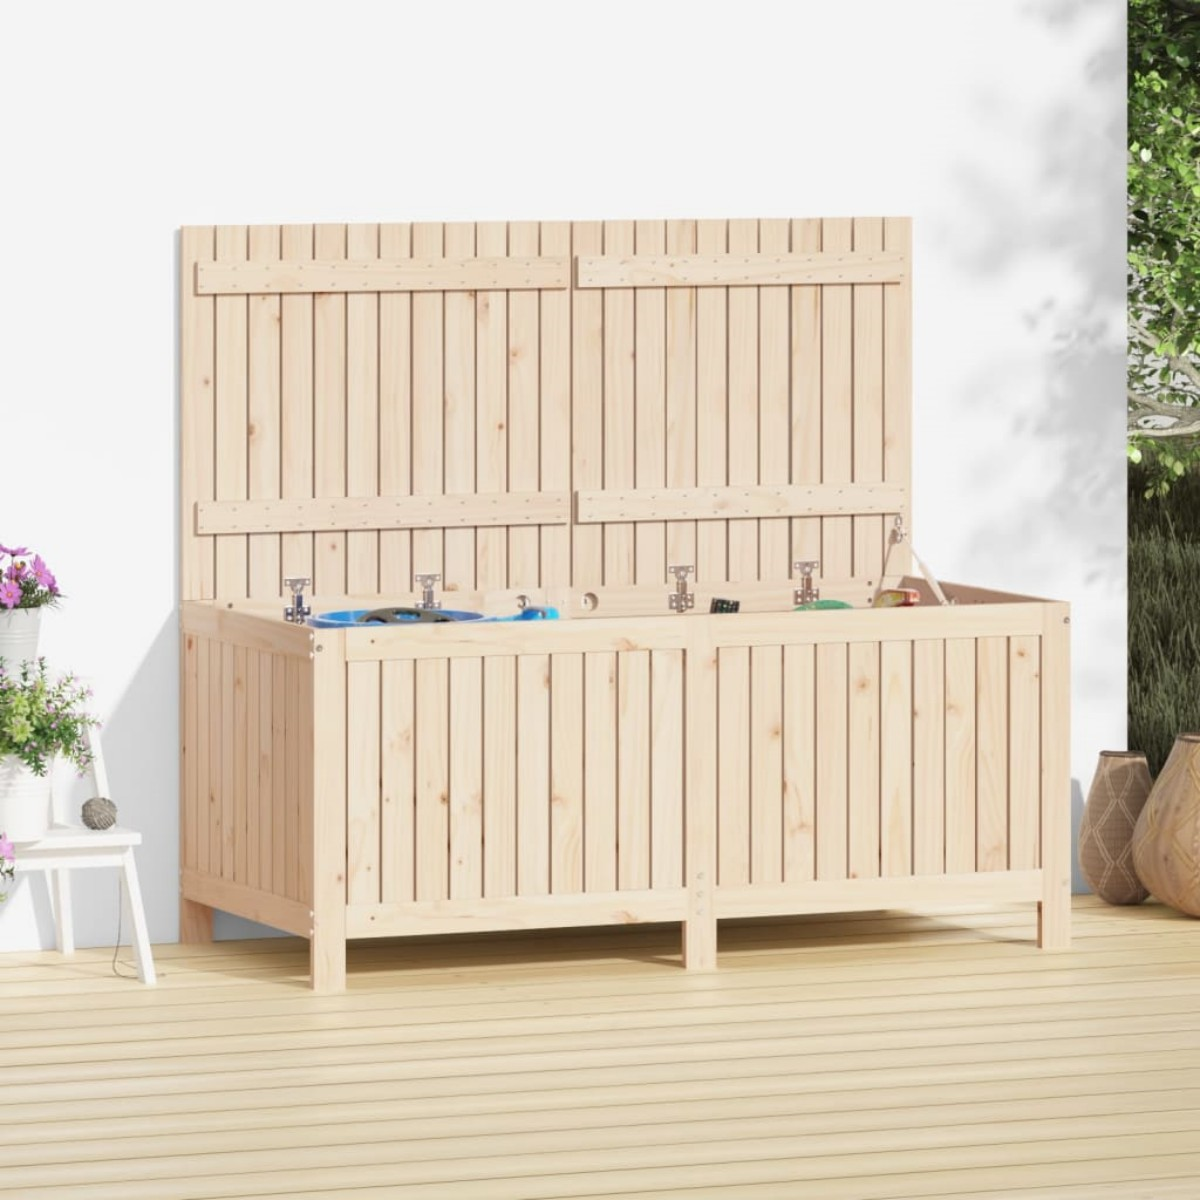 DOTMALL den Aufbewahrungsbox Holzfarbe xl-823850 für Garten,